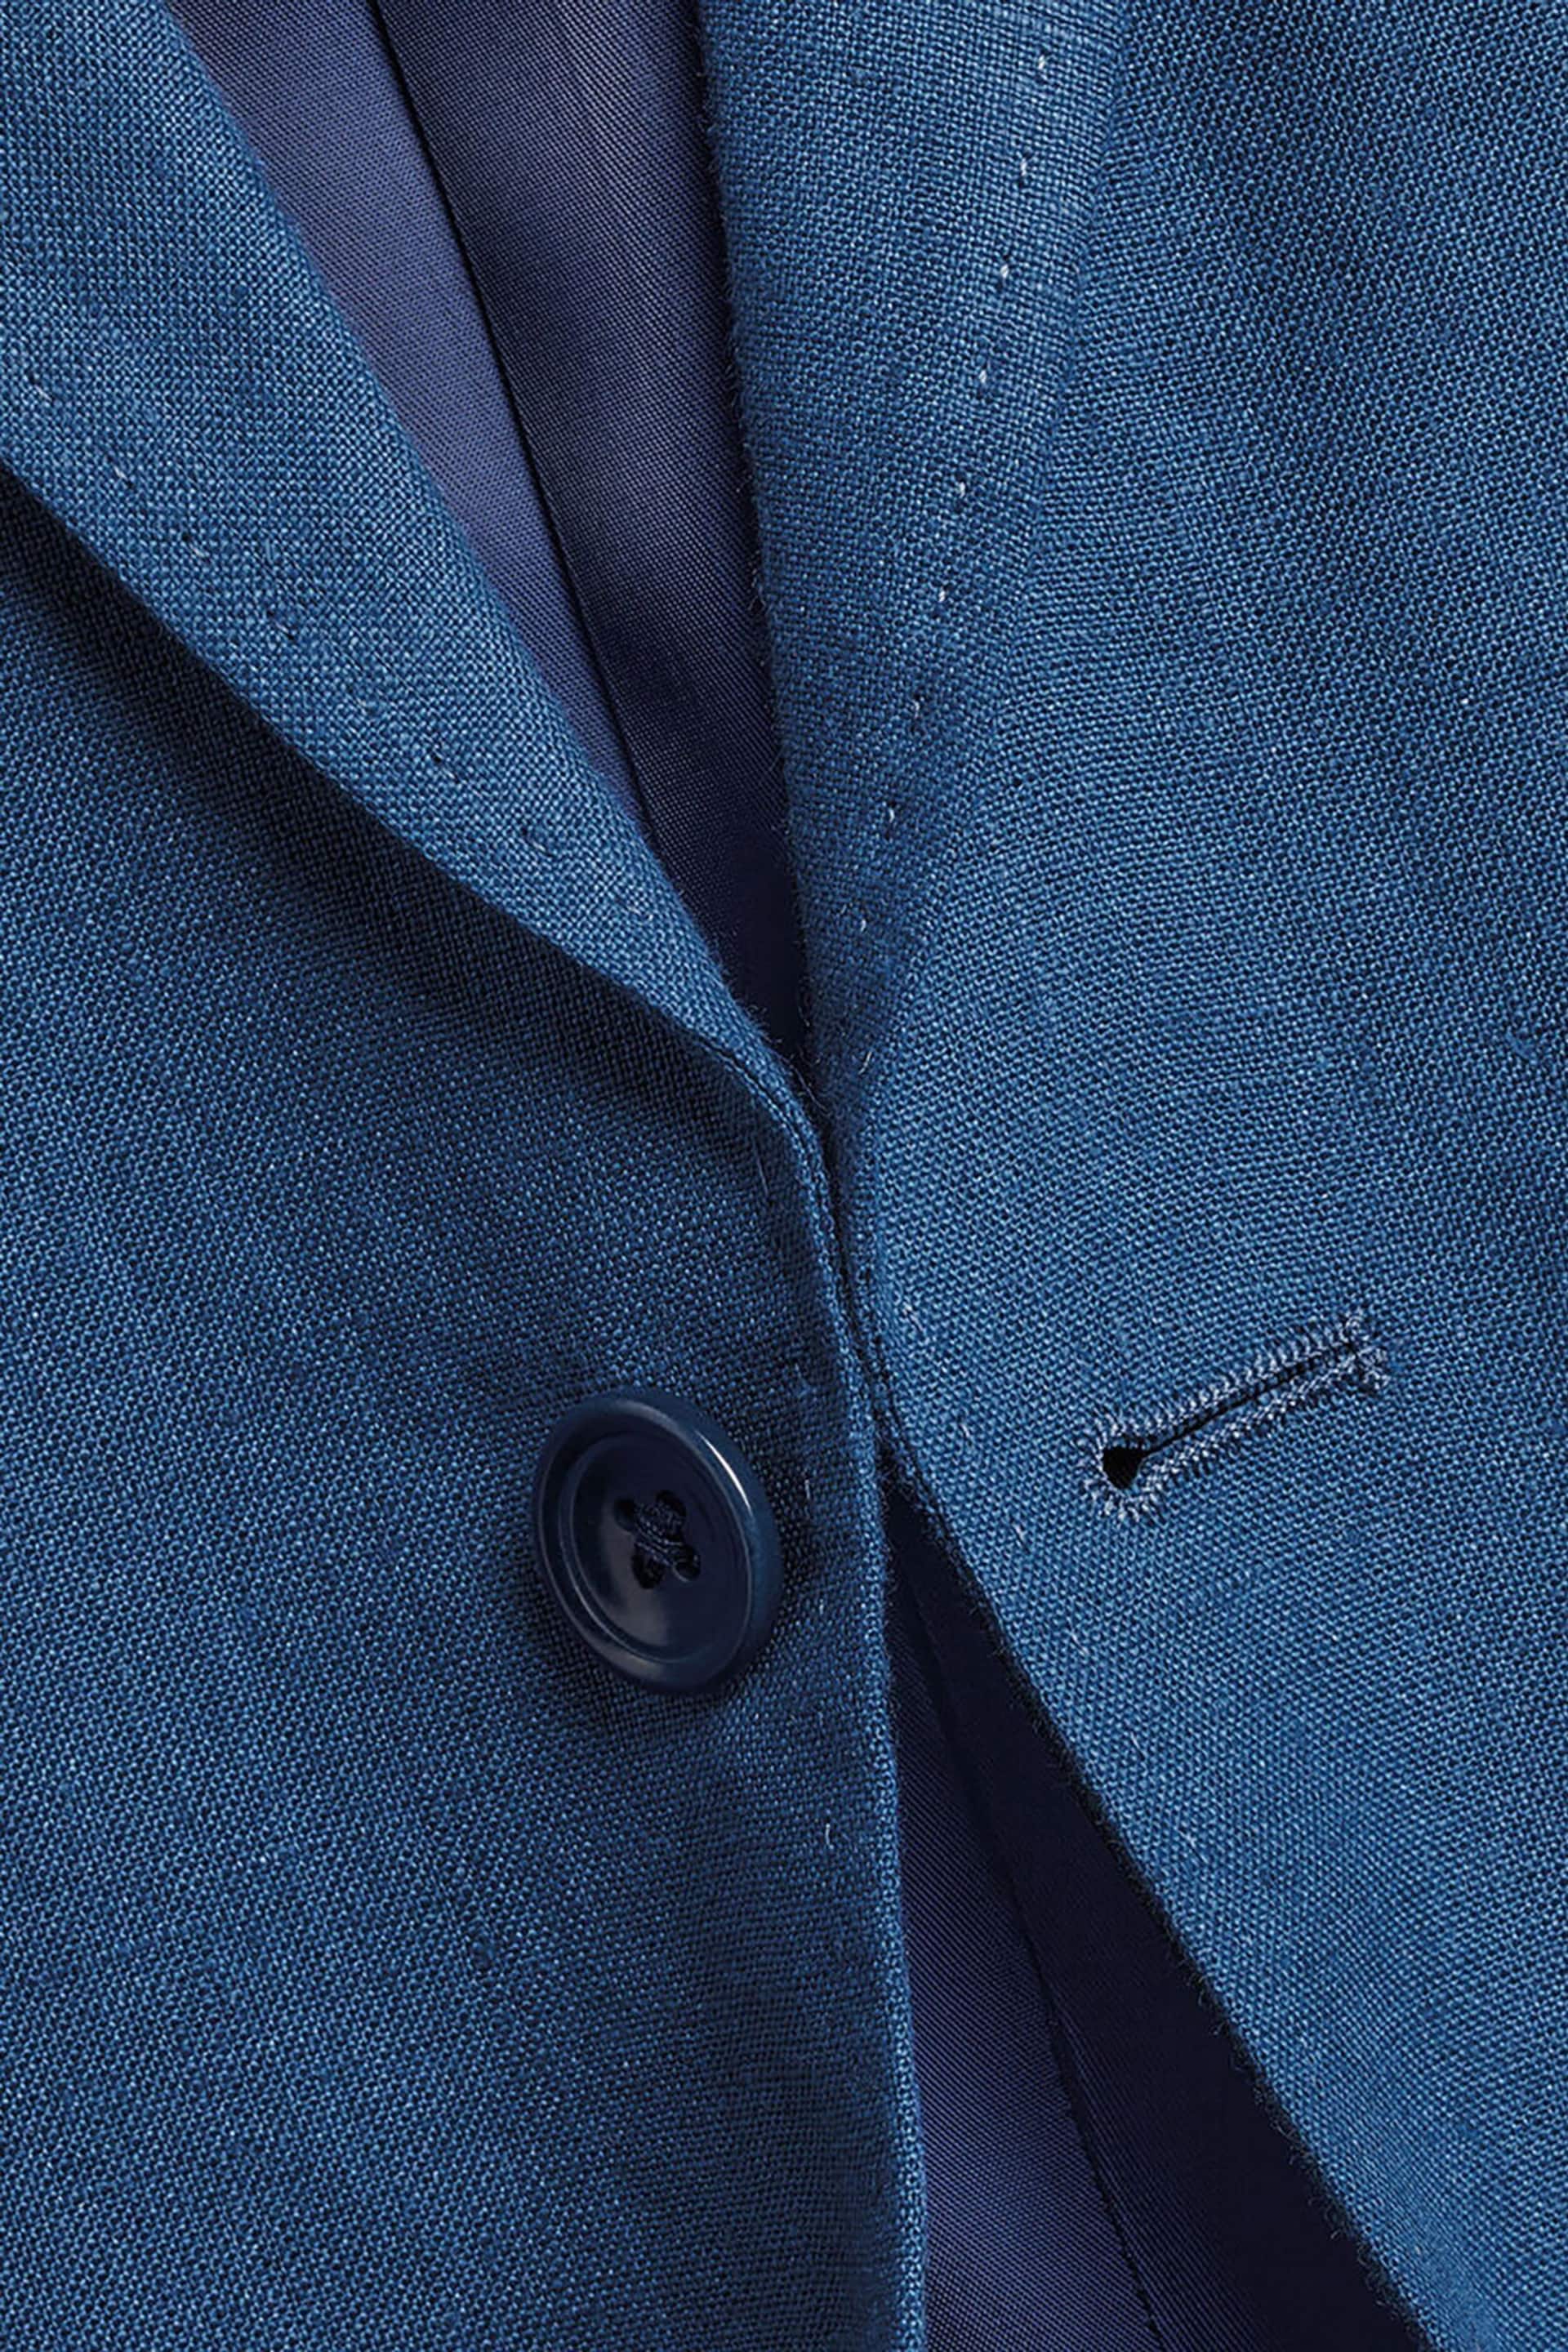 Charles Tyrwhitt Blue White Linen Classic Fit Jacket - Image 4 of 4